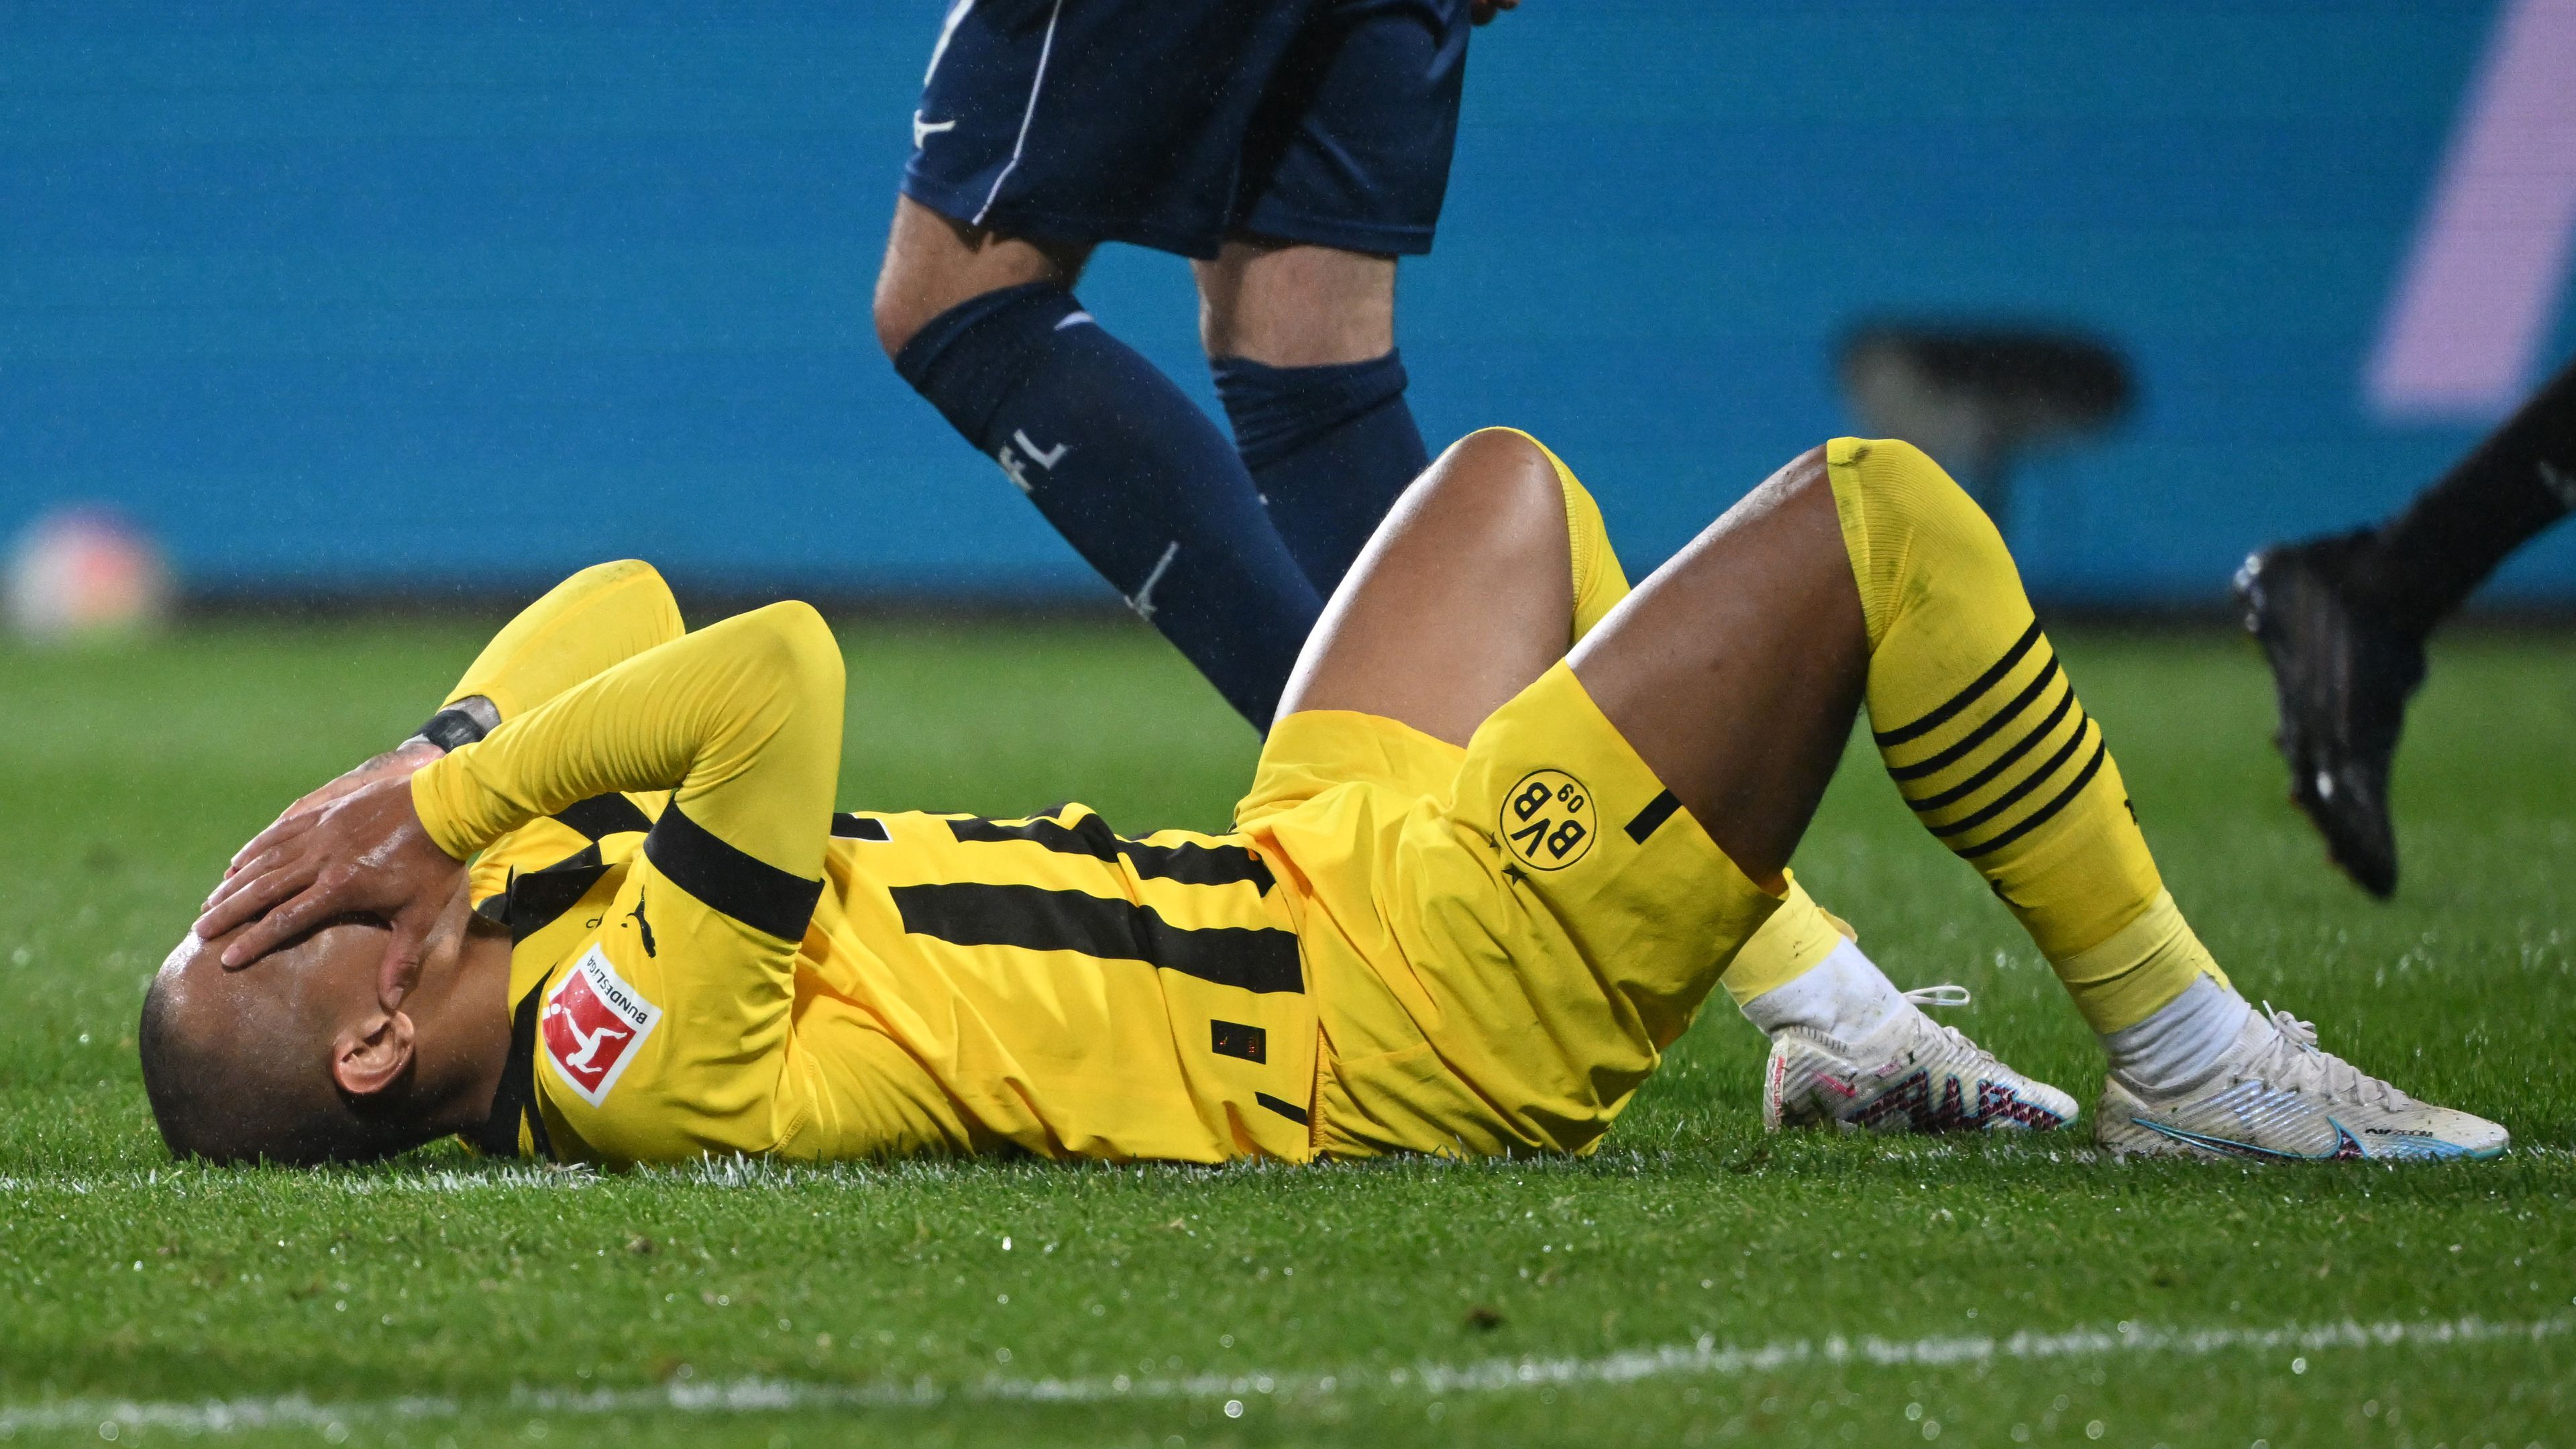 Malen fájdalma érthető, a Dortmund óriási lehetőséget szalasztott el a Bochum otthonában – vasárnap előzhet a Bayern.